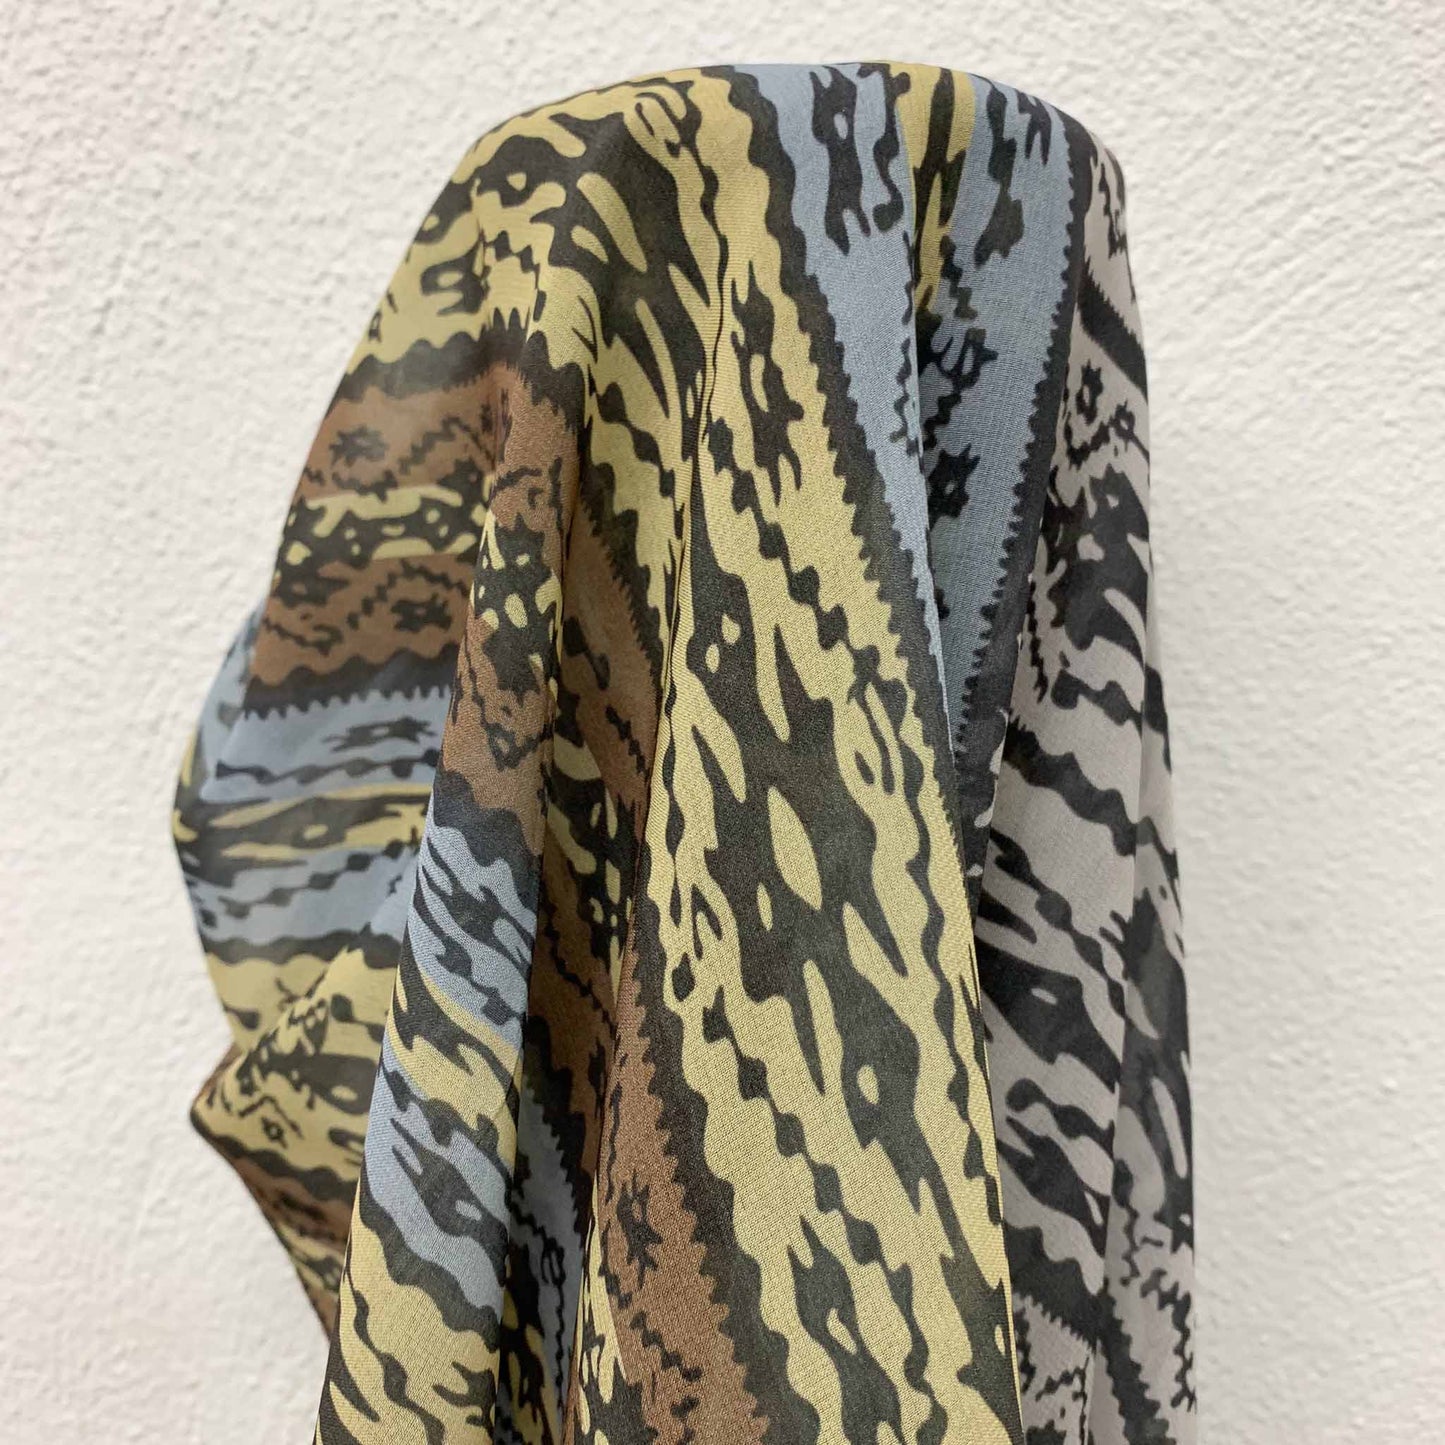 Chiffon Fabric - Abstract stripe